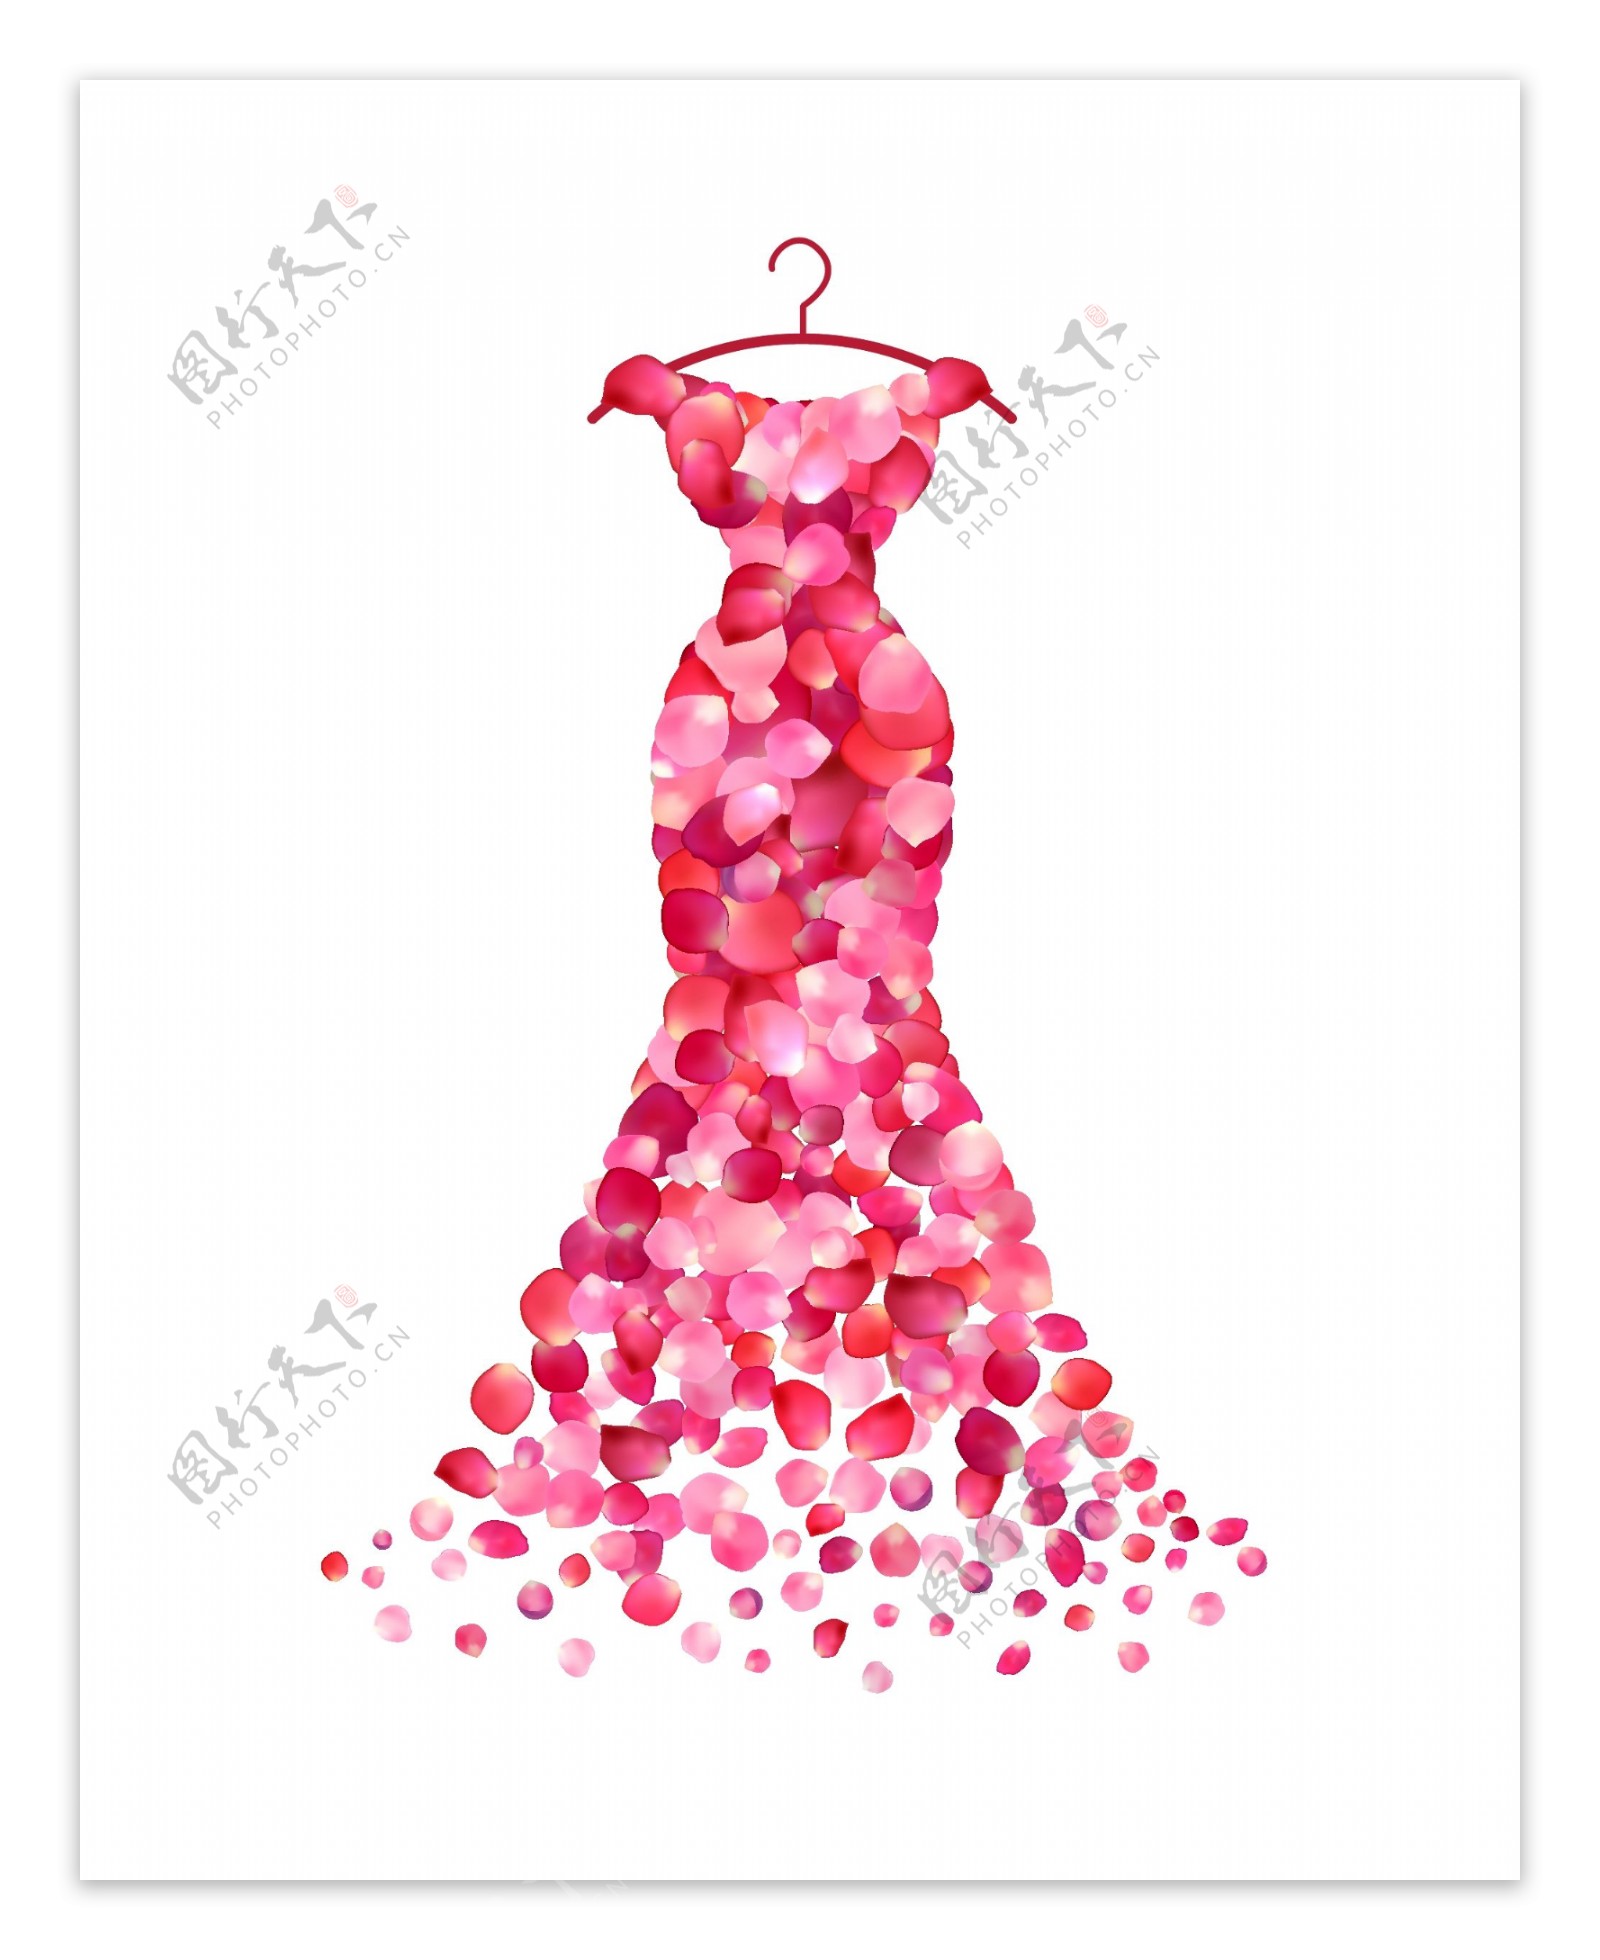 玫瑰花瓣组合连衣裙海报唯美设计素材